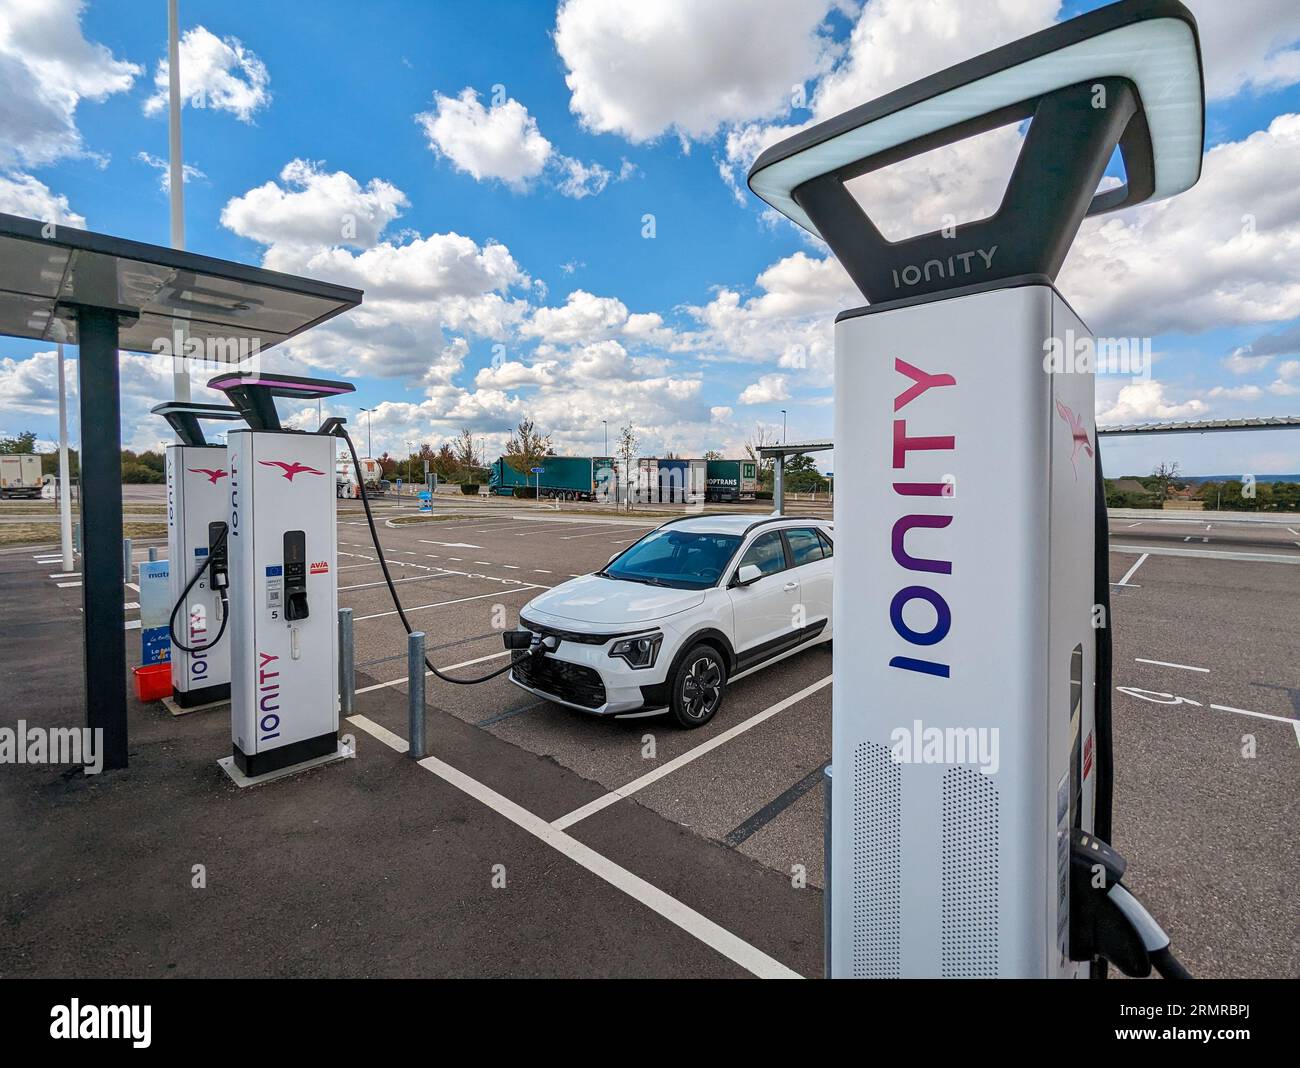 Borne de recharge pour véhicules électriques appartenant au réseau Ionity, située sur la zone de desserte Avia de Maison Dieu sur l’autoroute A6 Banque D'Images